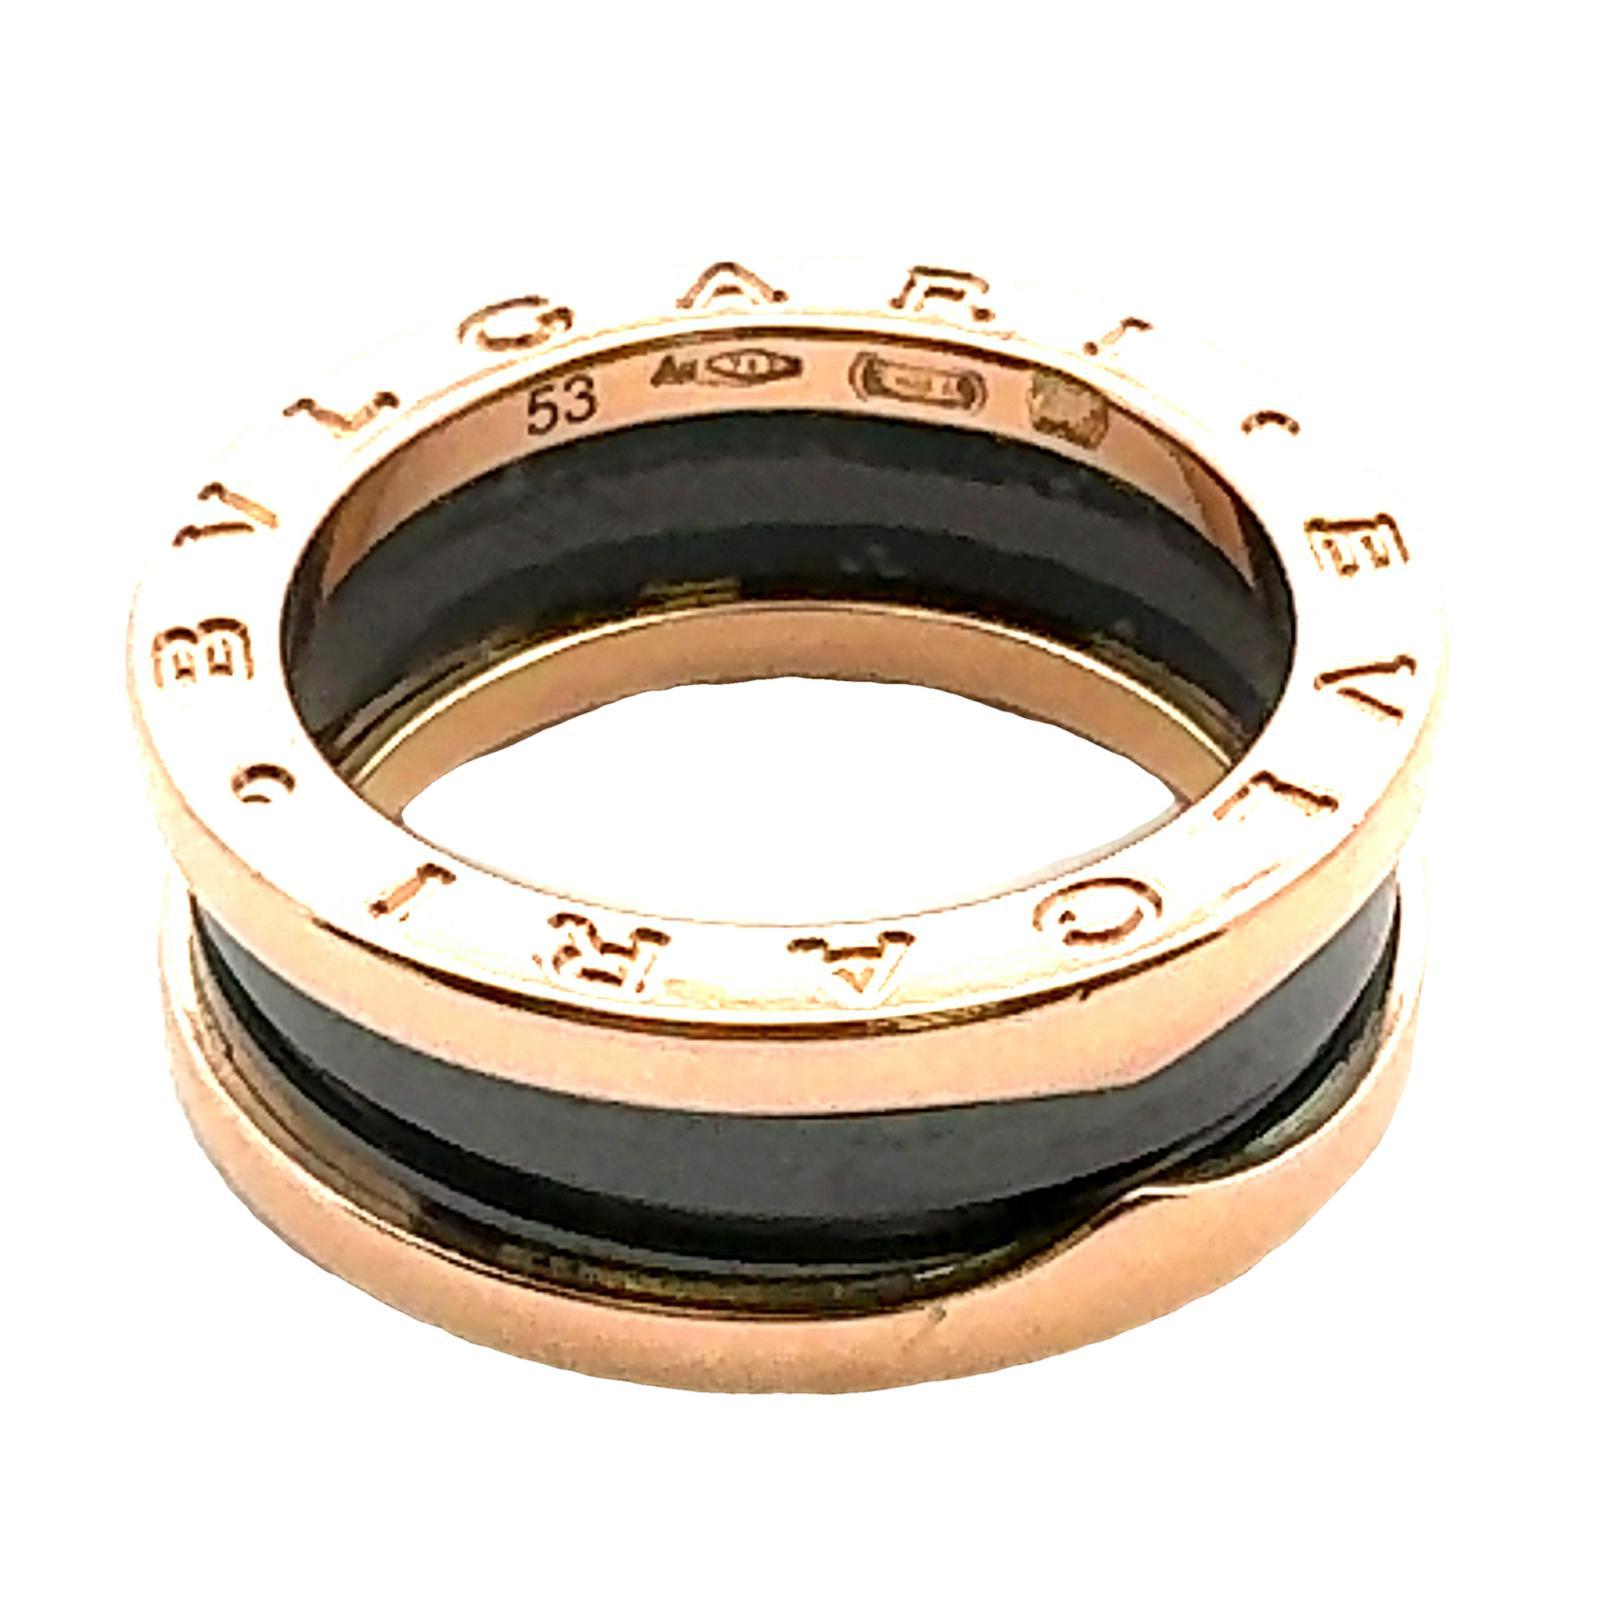 Women's BVLGARI 18 Karat Rose Gold & Ceramic B-Zero Ring Size 53 ( US Size 6) For Sale